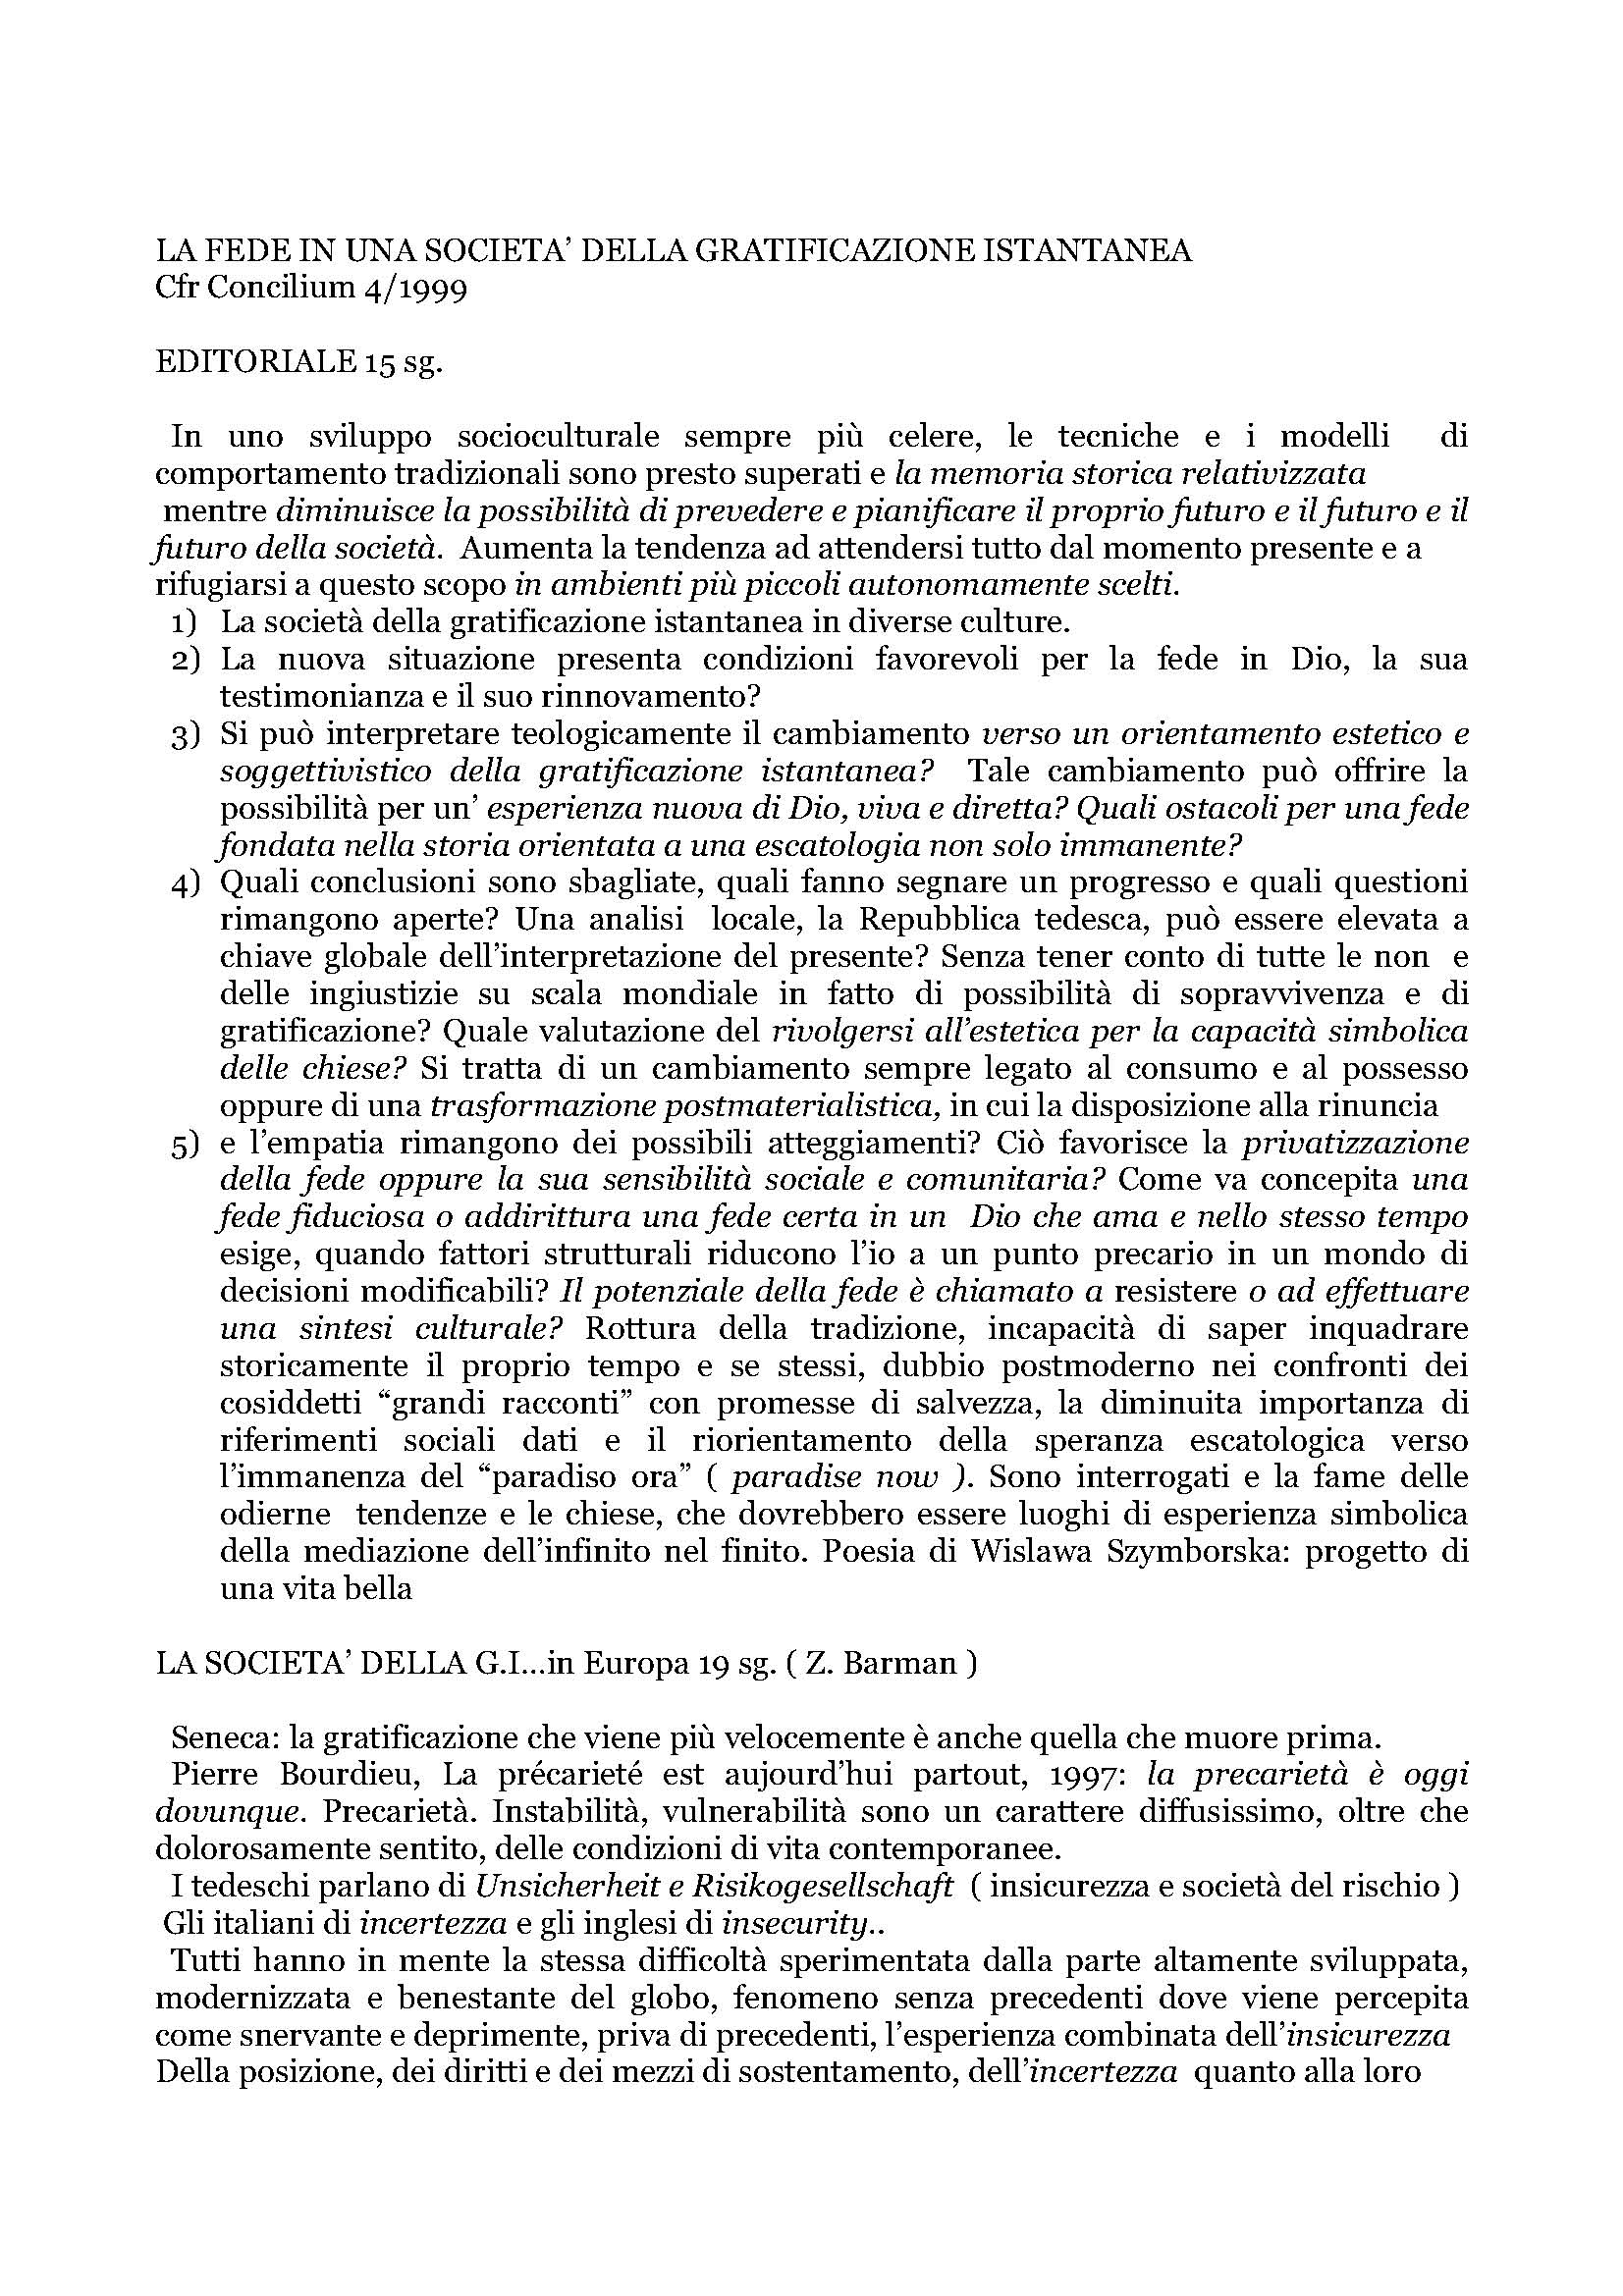 1999_Concilio_LA_FEDE_IN_UNA_SOCIETA_DELLA_GRATIFICAZIONE_ISTANTANEA.pdf